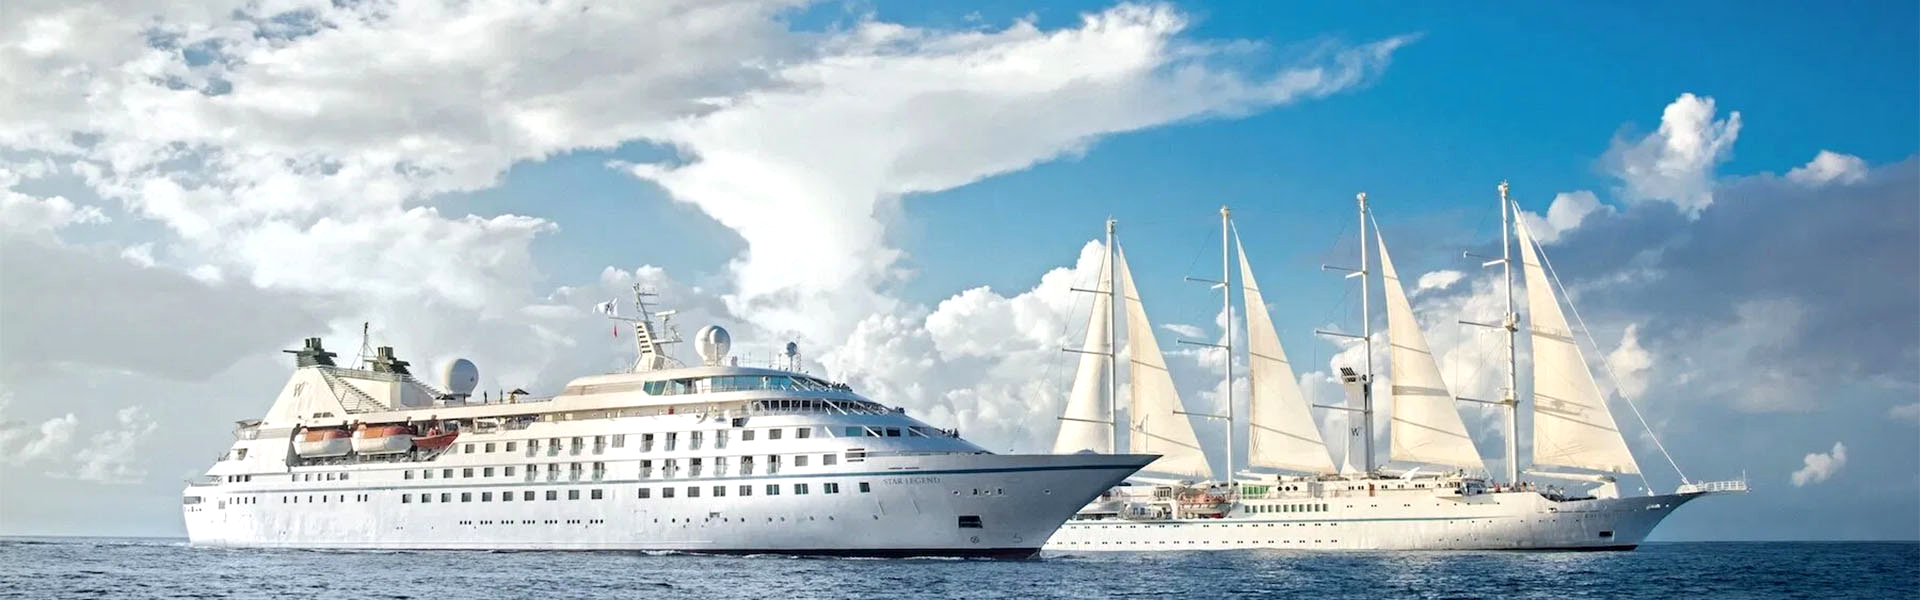 Regala-ti una crociera Windstar nel mediterraneo sarà come navigare a bordo di uno yacht privato